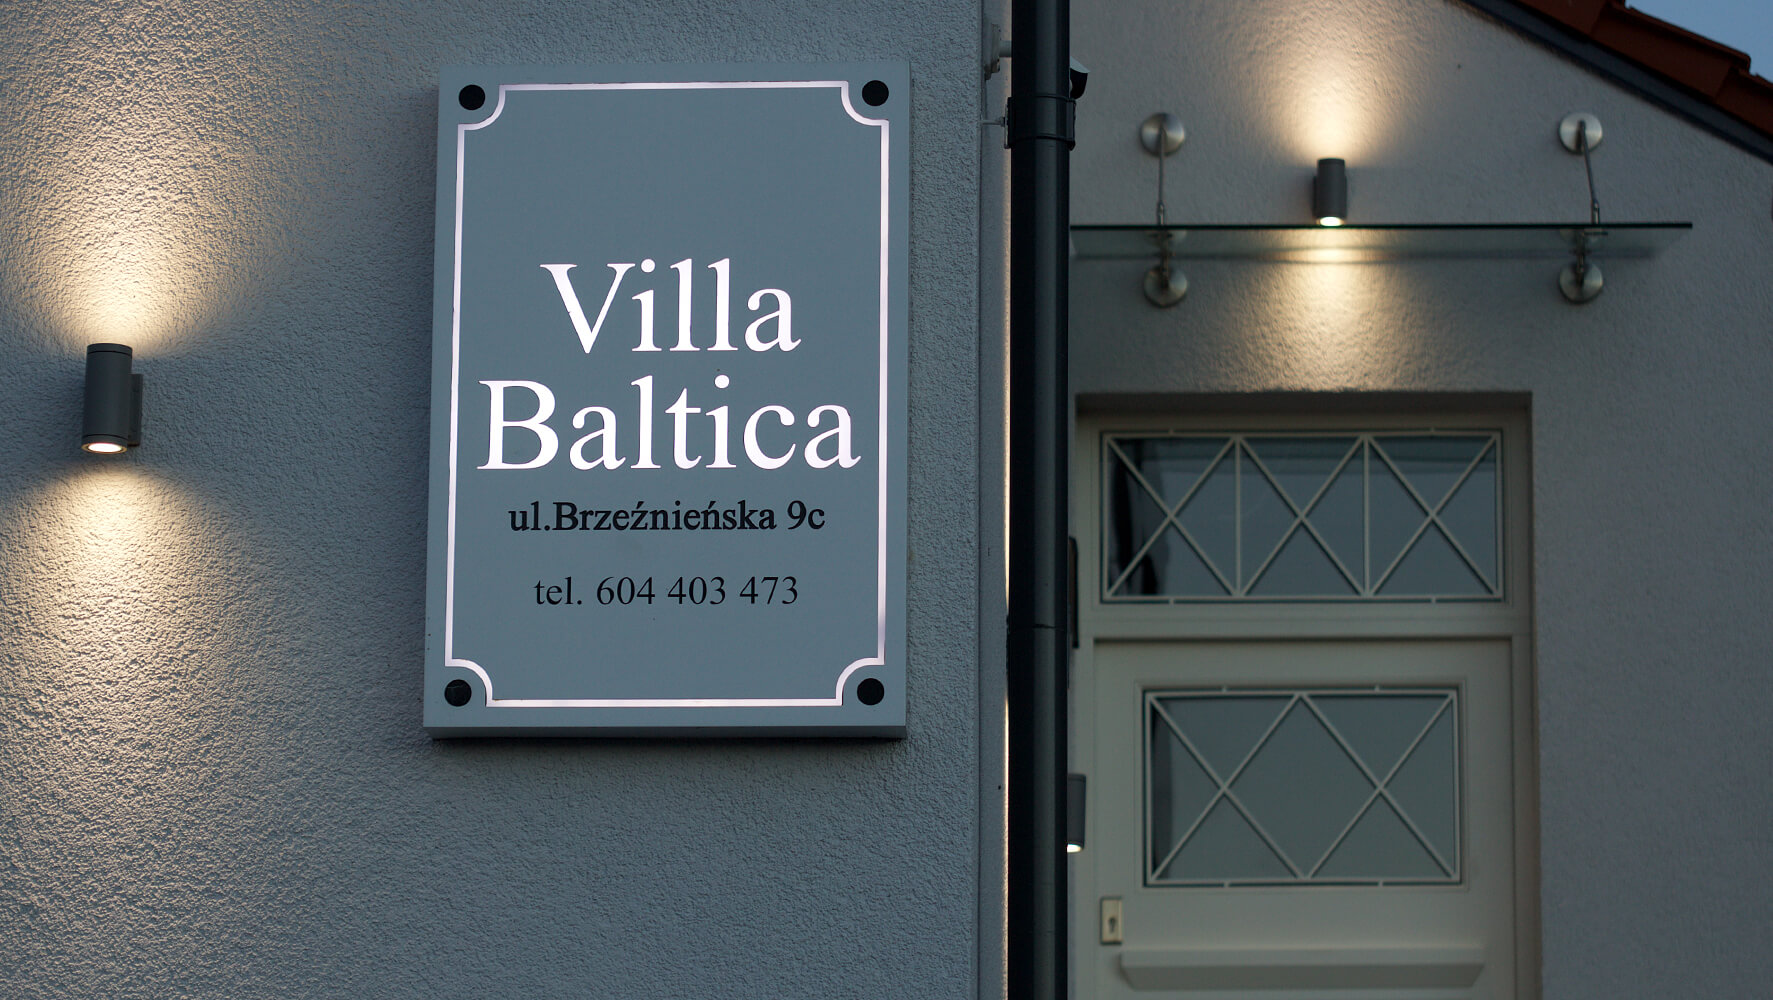 Villa Baltica - Villa Baltica - company signboard on dibond coffer